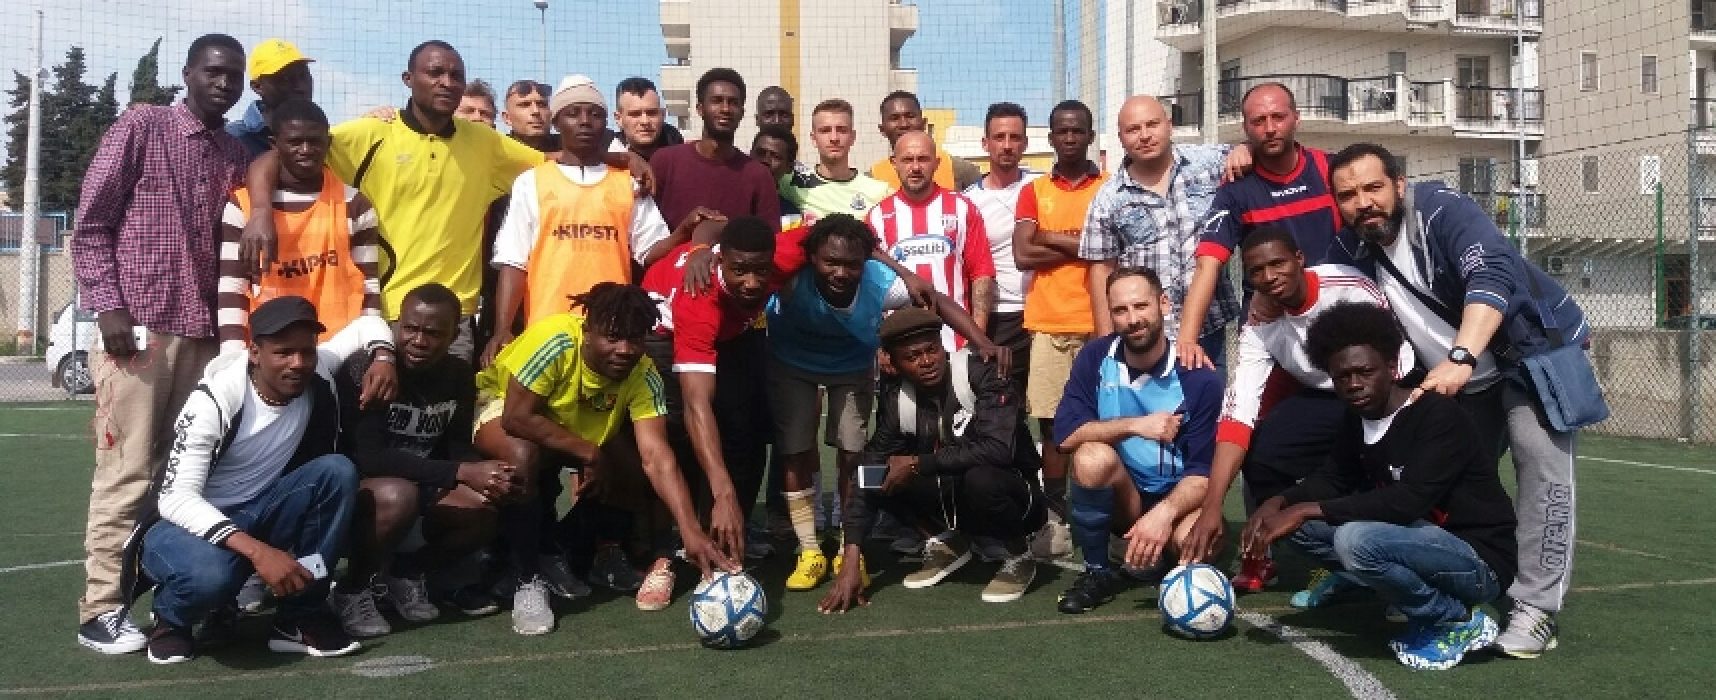 Primo torneo di calcio a 5 multiculturale promosso dalla cooperativa sociale Oasi 2